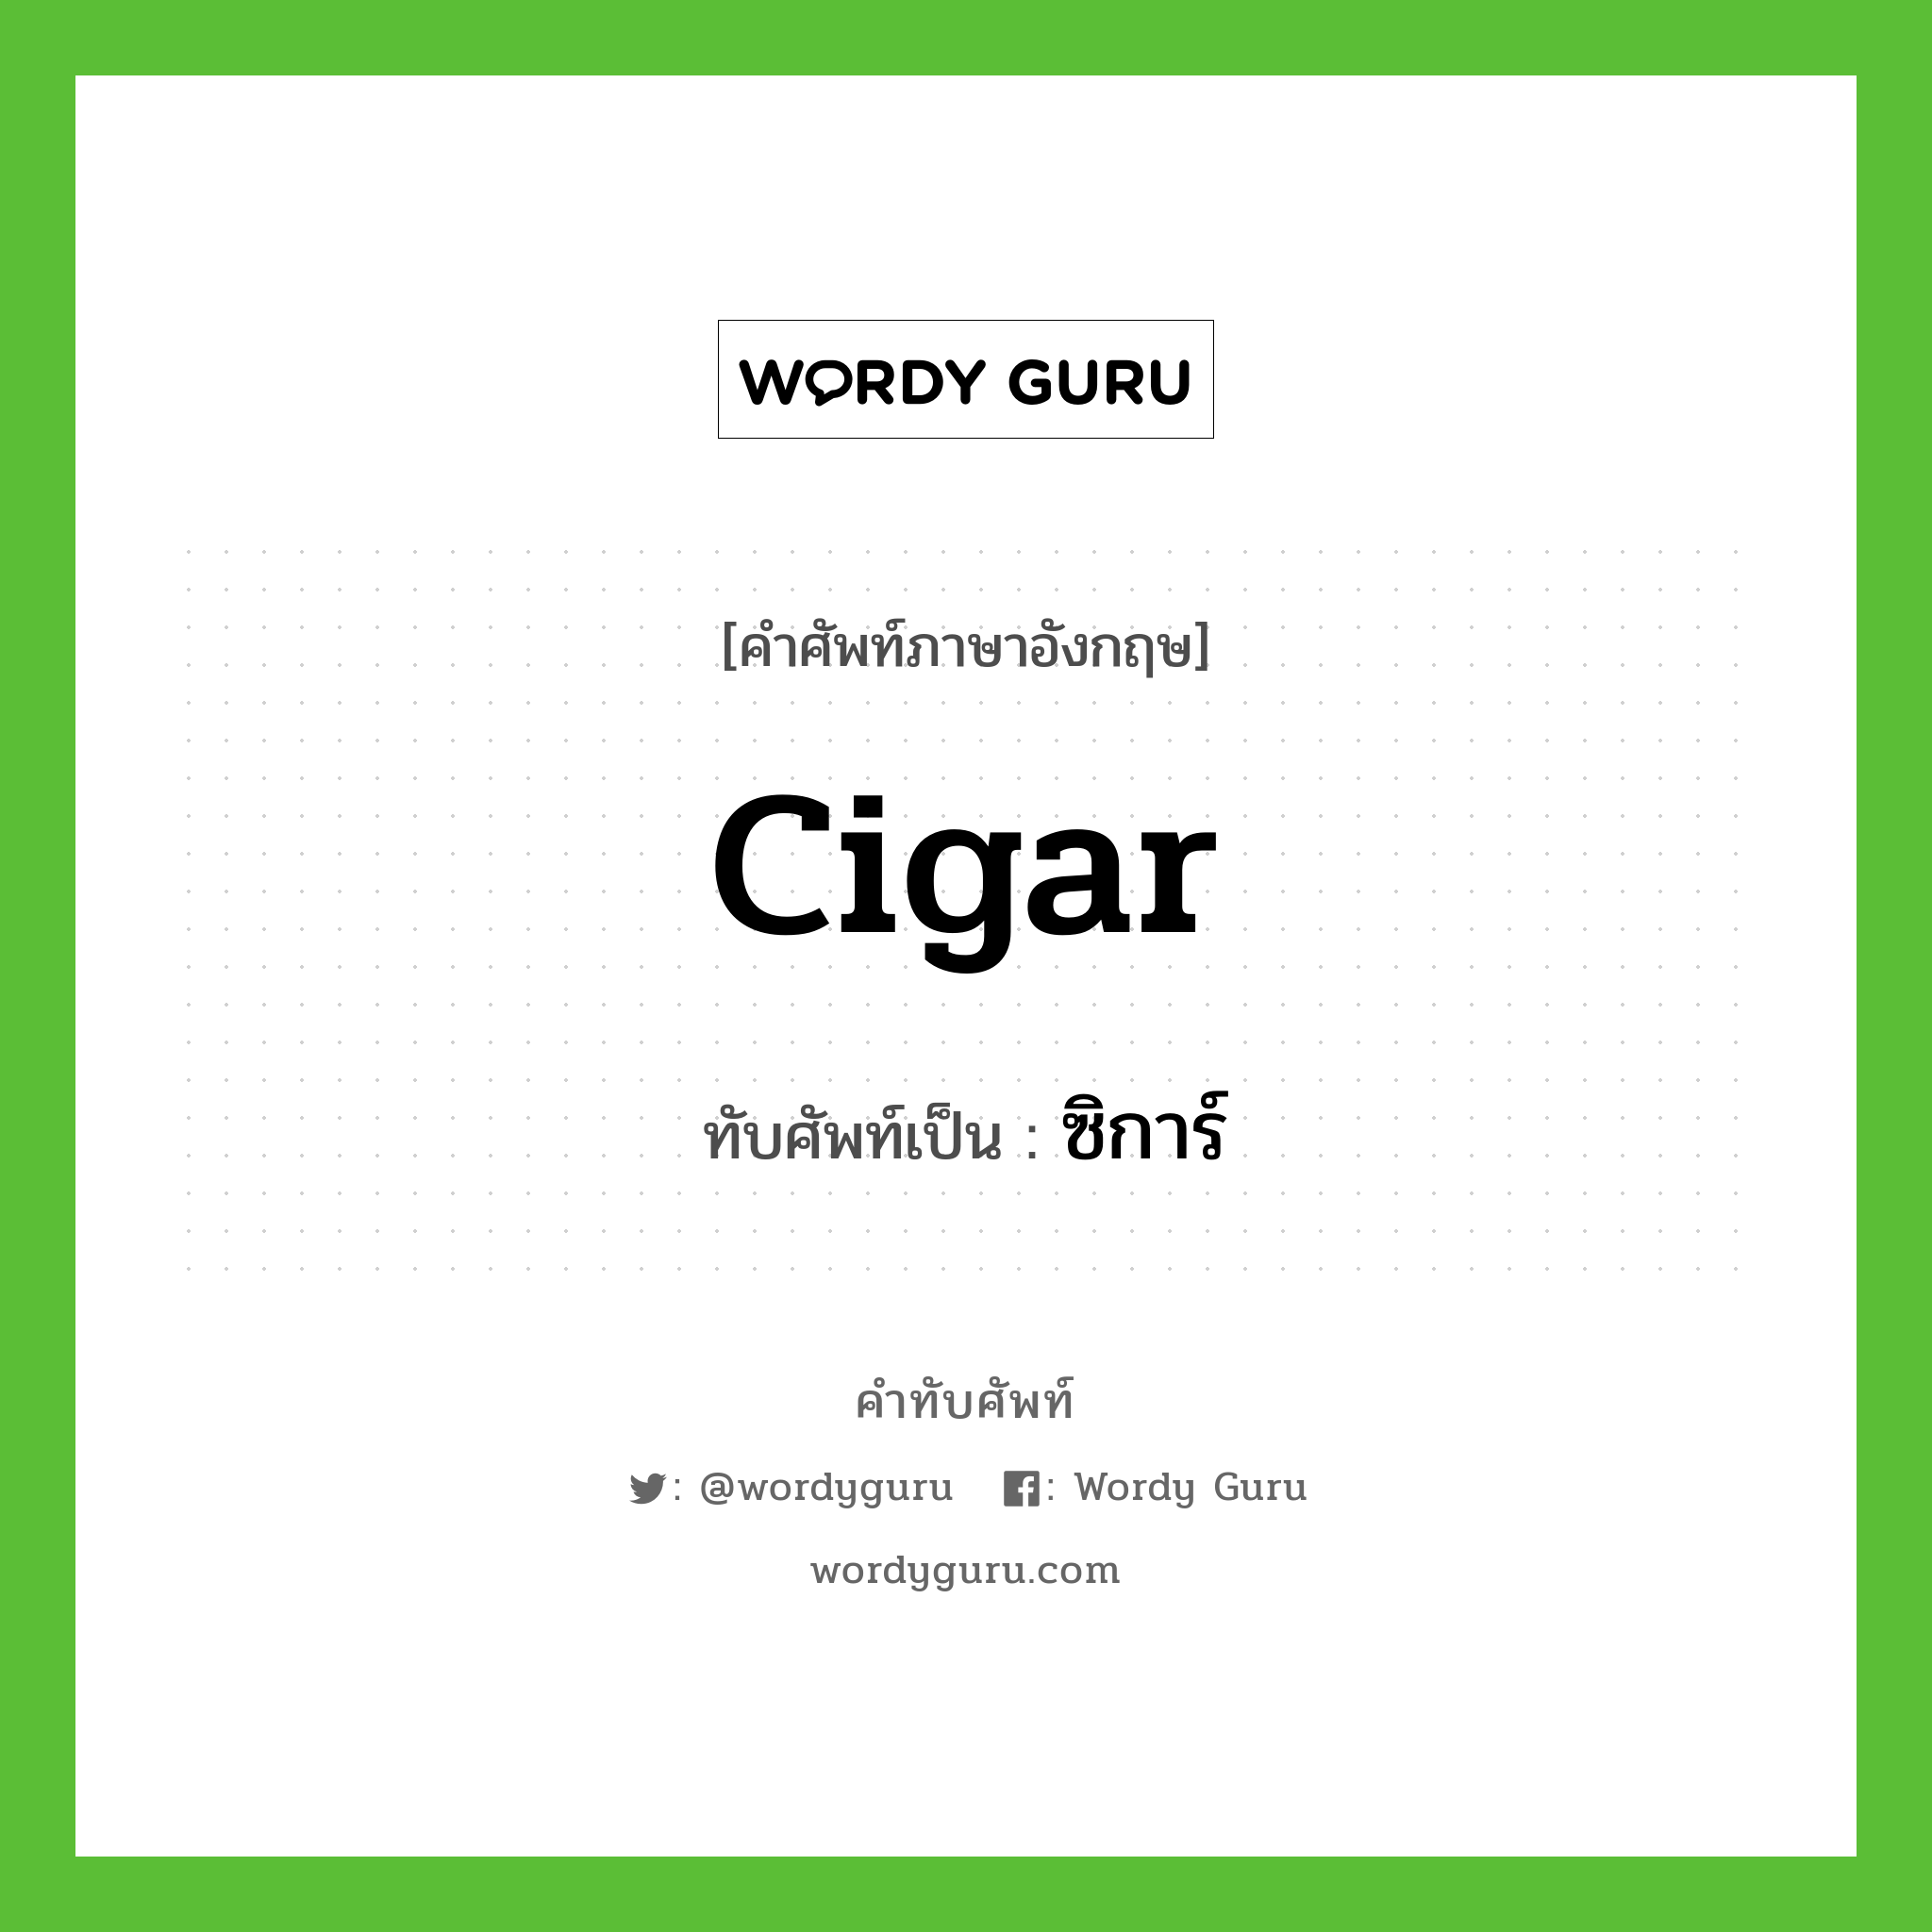 cigar เขียนเป็นคำไทยว่าอะไร?, คำศัพท์ภาษาอังกฤษ cigar ทับศัพท์เป็น ซิการ์